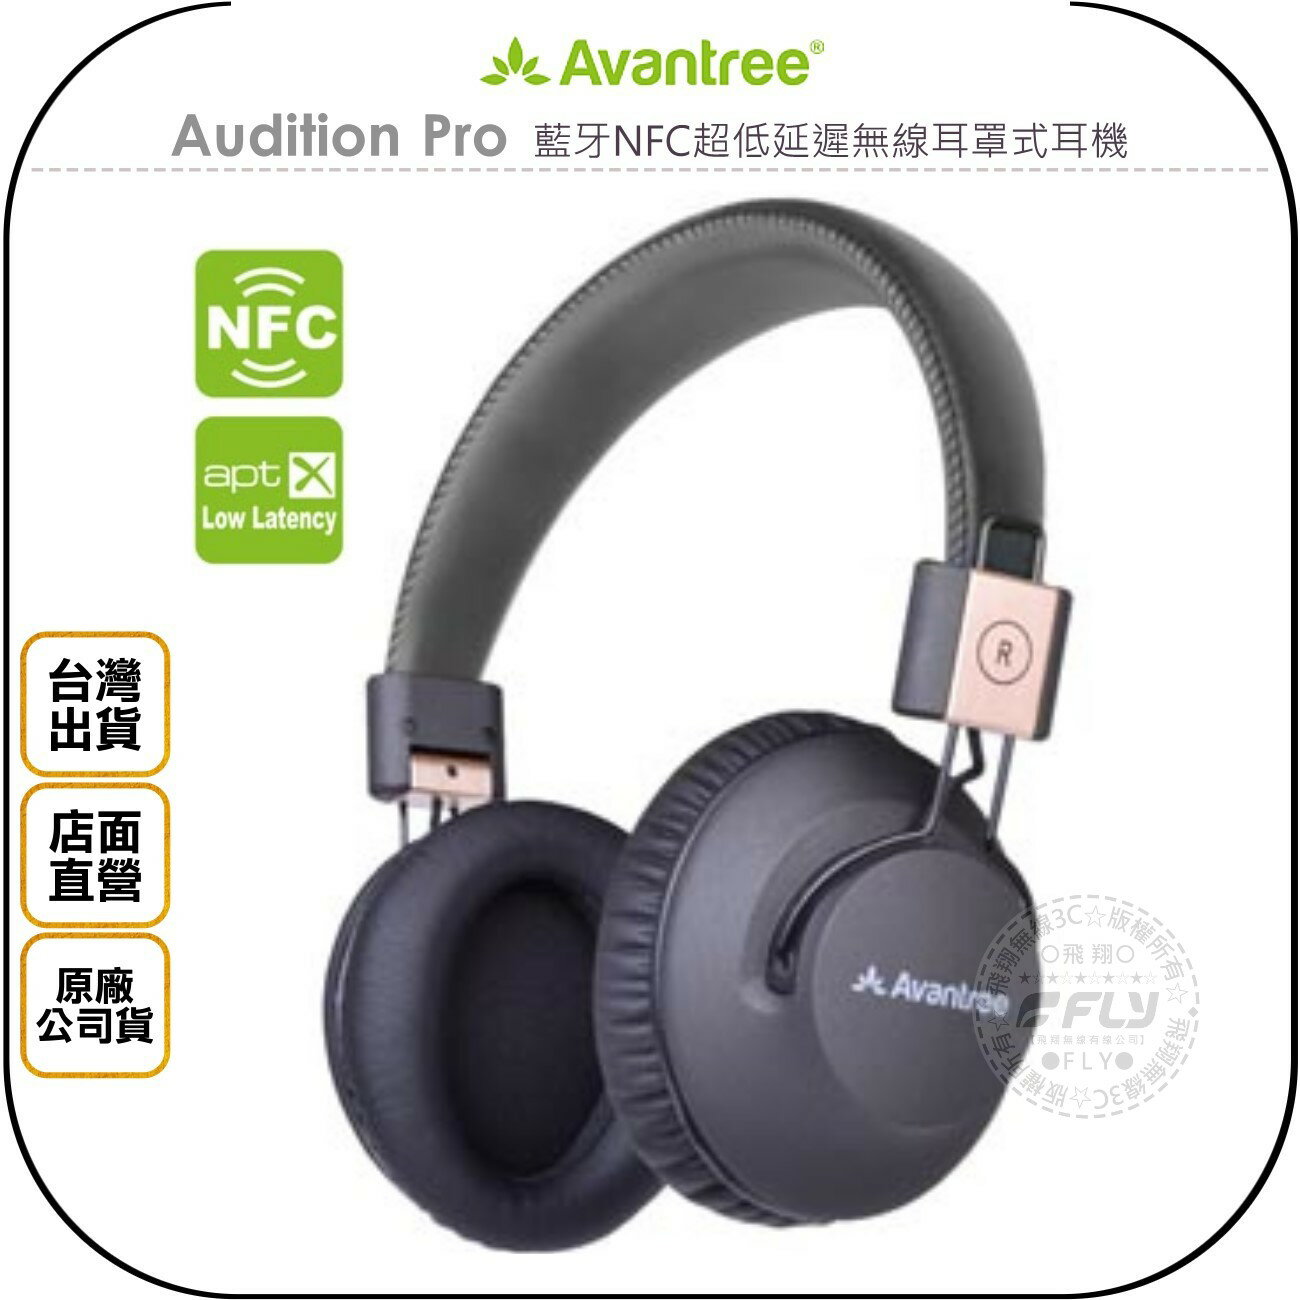 《飛翔無線3C》Avantree Audition Pro 藍牙NFC超低延遲無線耳罩式耳機◉公司貨◉摺疊收納